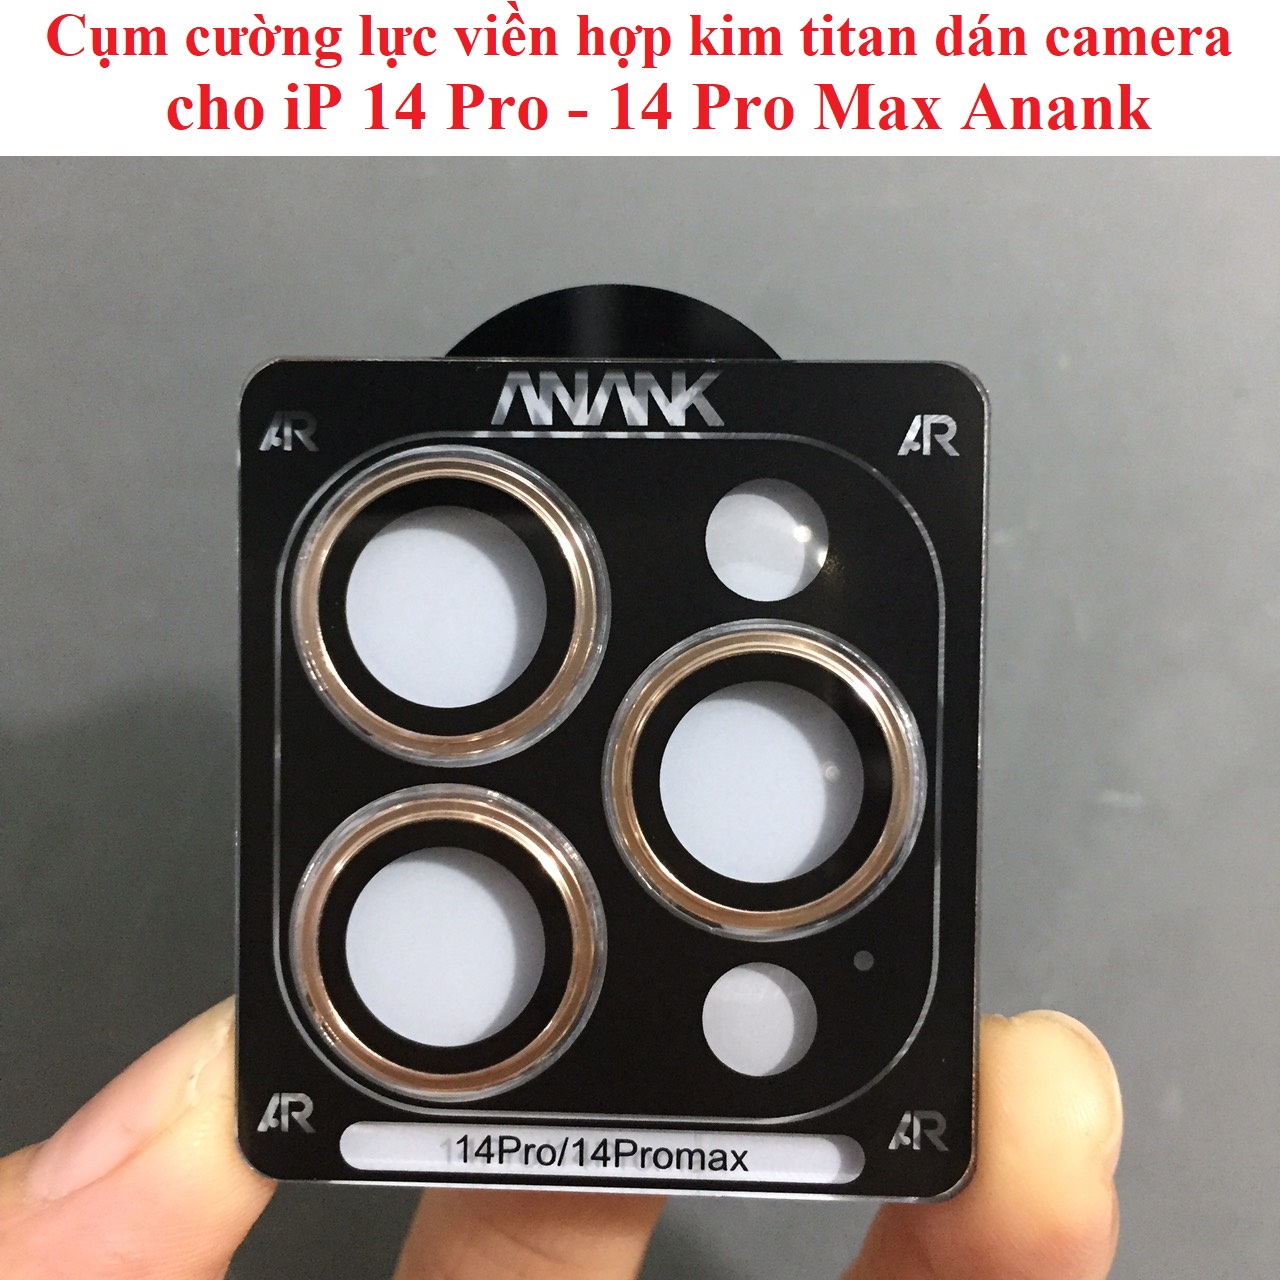 Cụm cường lực viền hợp kim titan dán camera cho iP 14 Pro 14 Pro Max ANANK